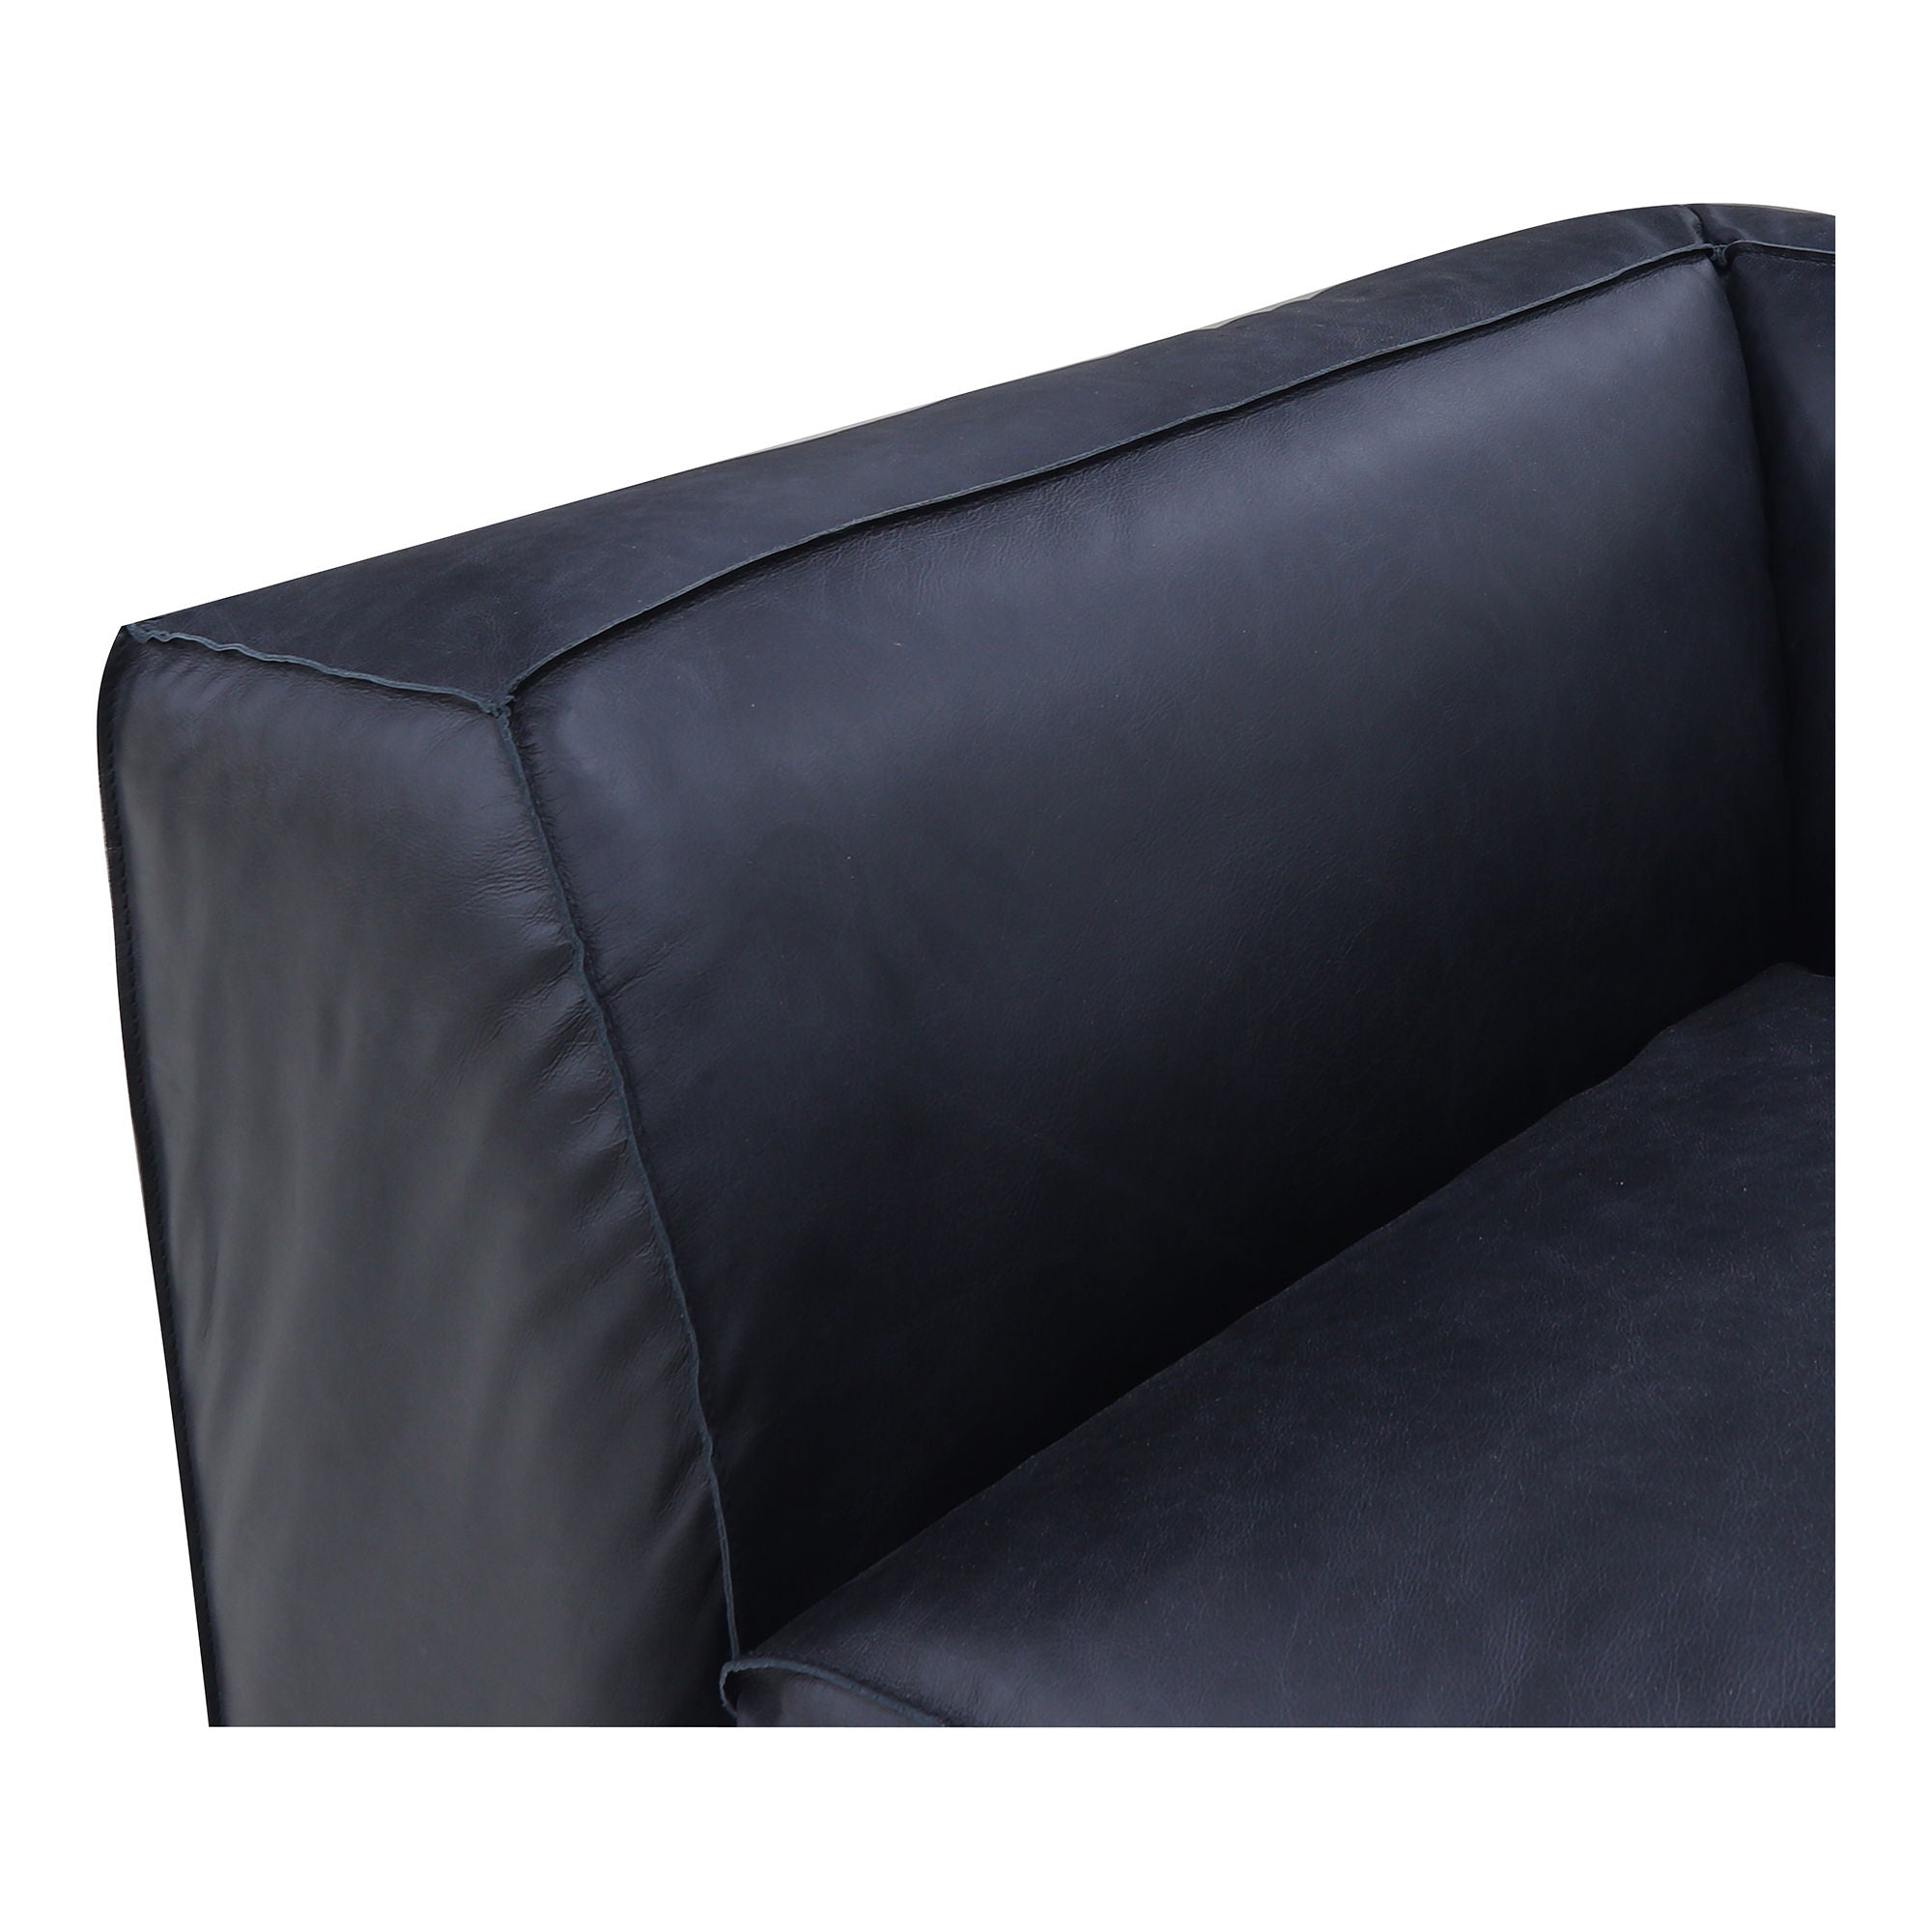 Form - Nook Modular Sectional Vantage Black Leather